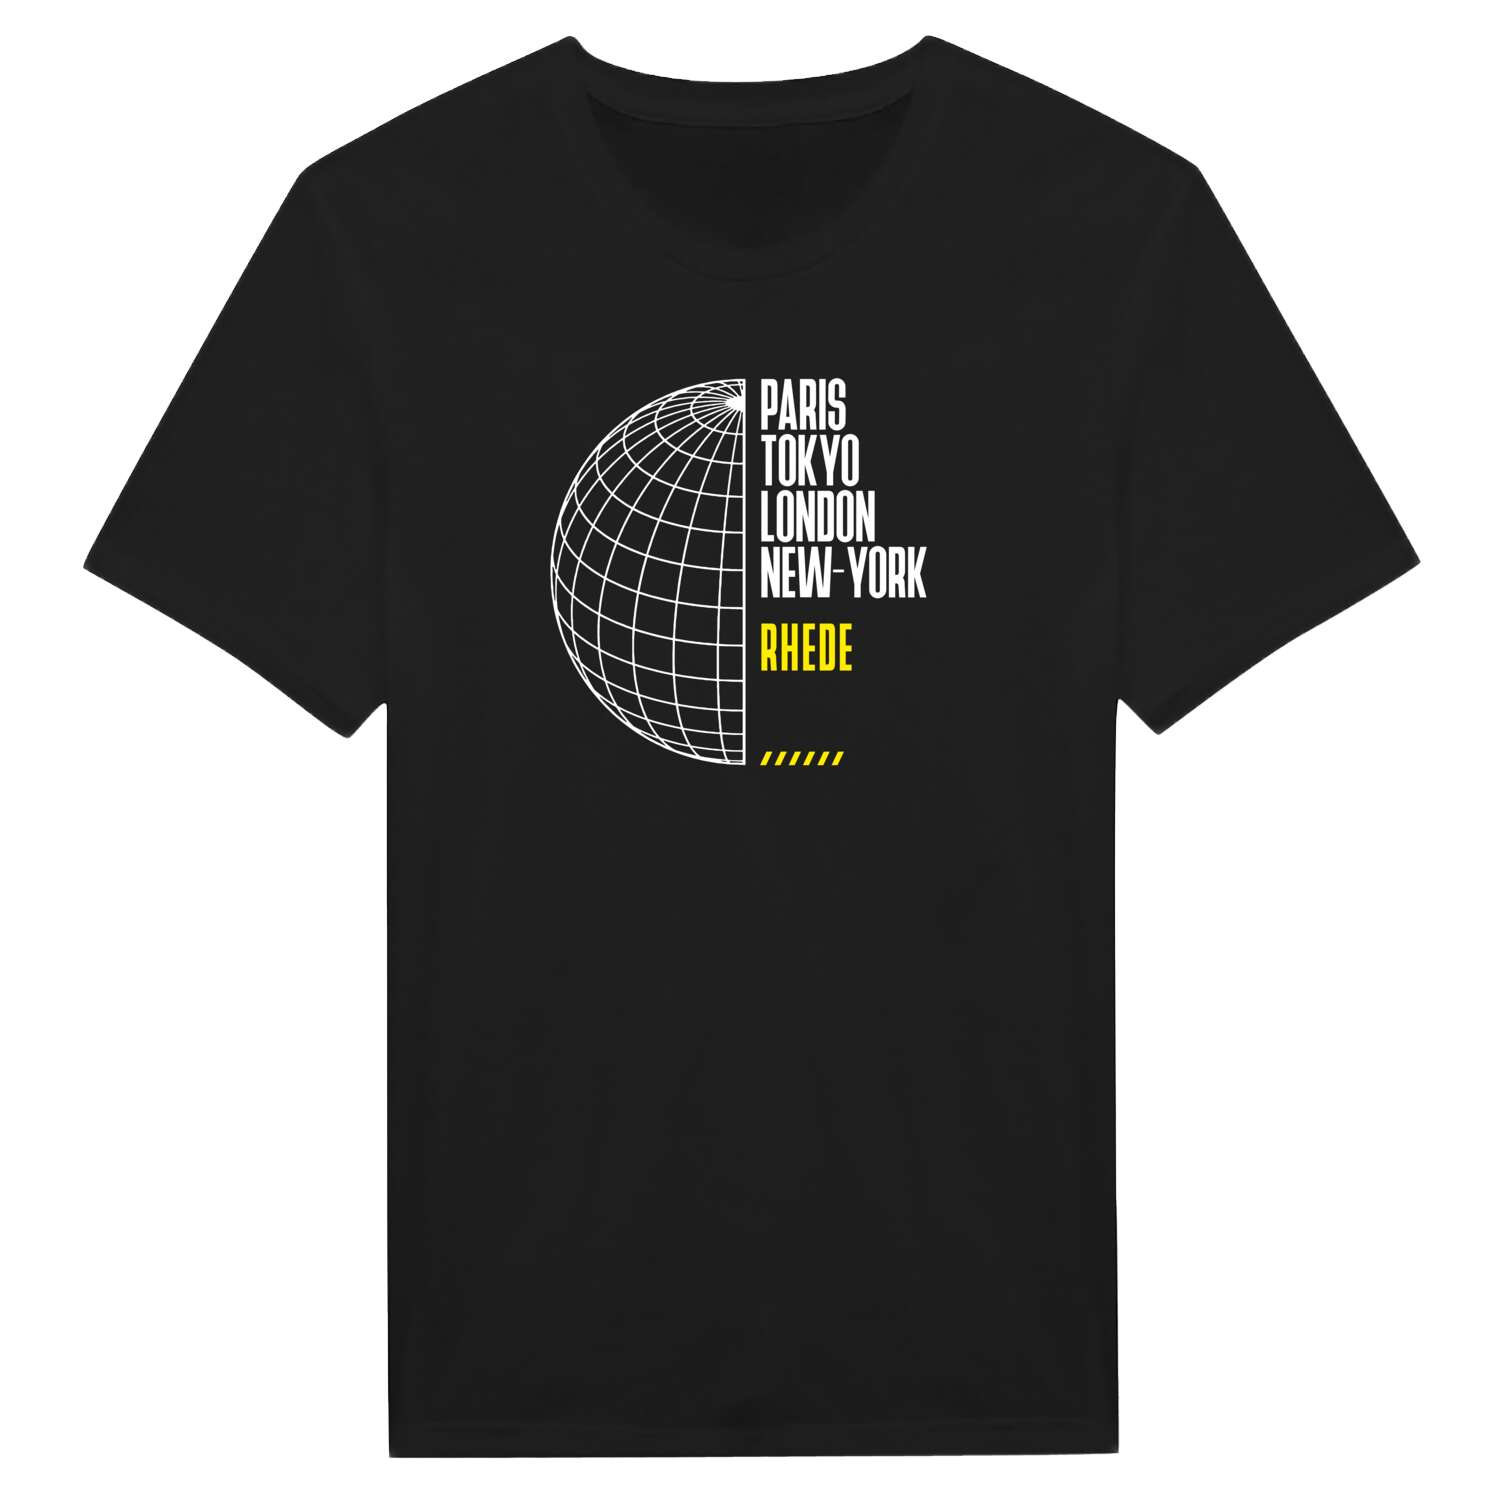 Rhede T-Shirt »Paris Tokyo London«